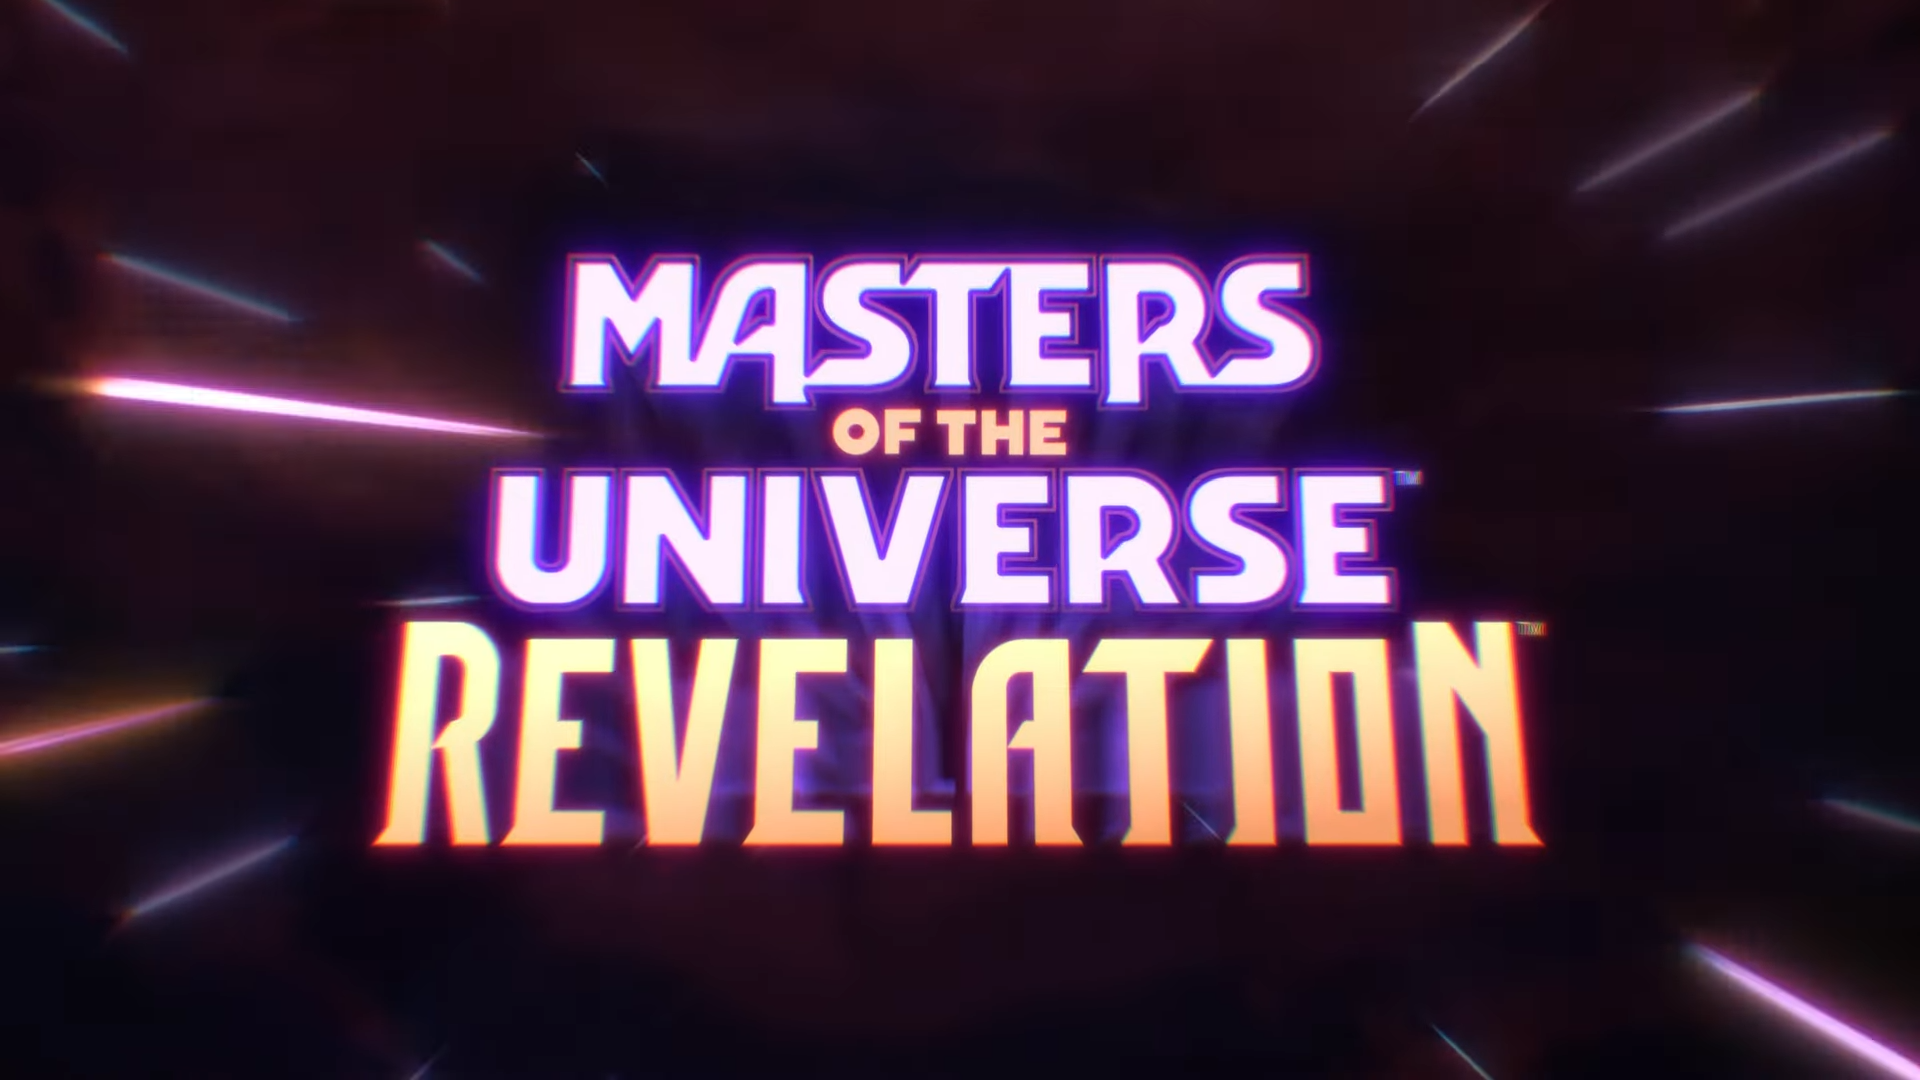 ¡Por Eternia! He-Man se prepara para la batalla en el nuevo tráiler de 'Masters of the Universe: Revelation'